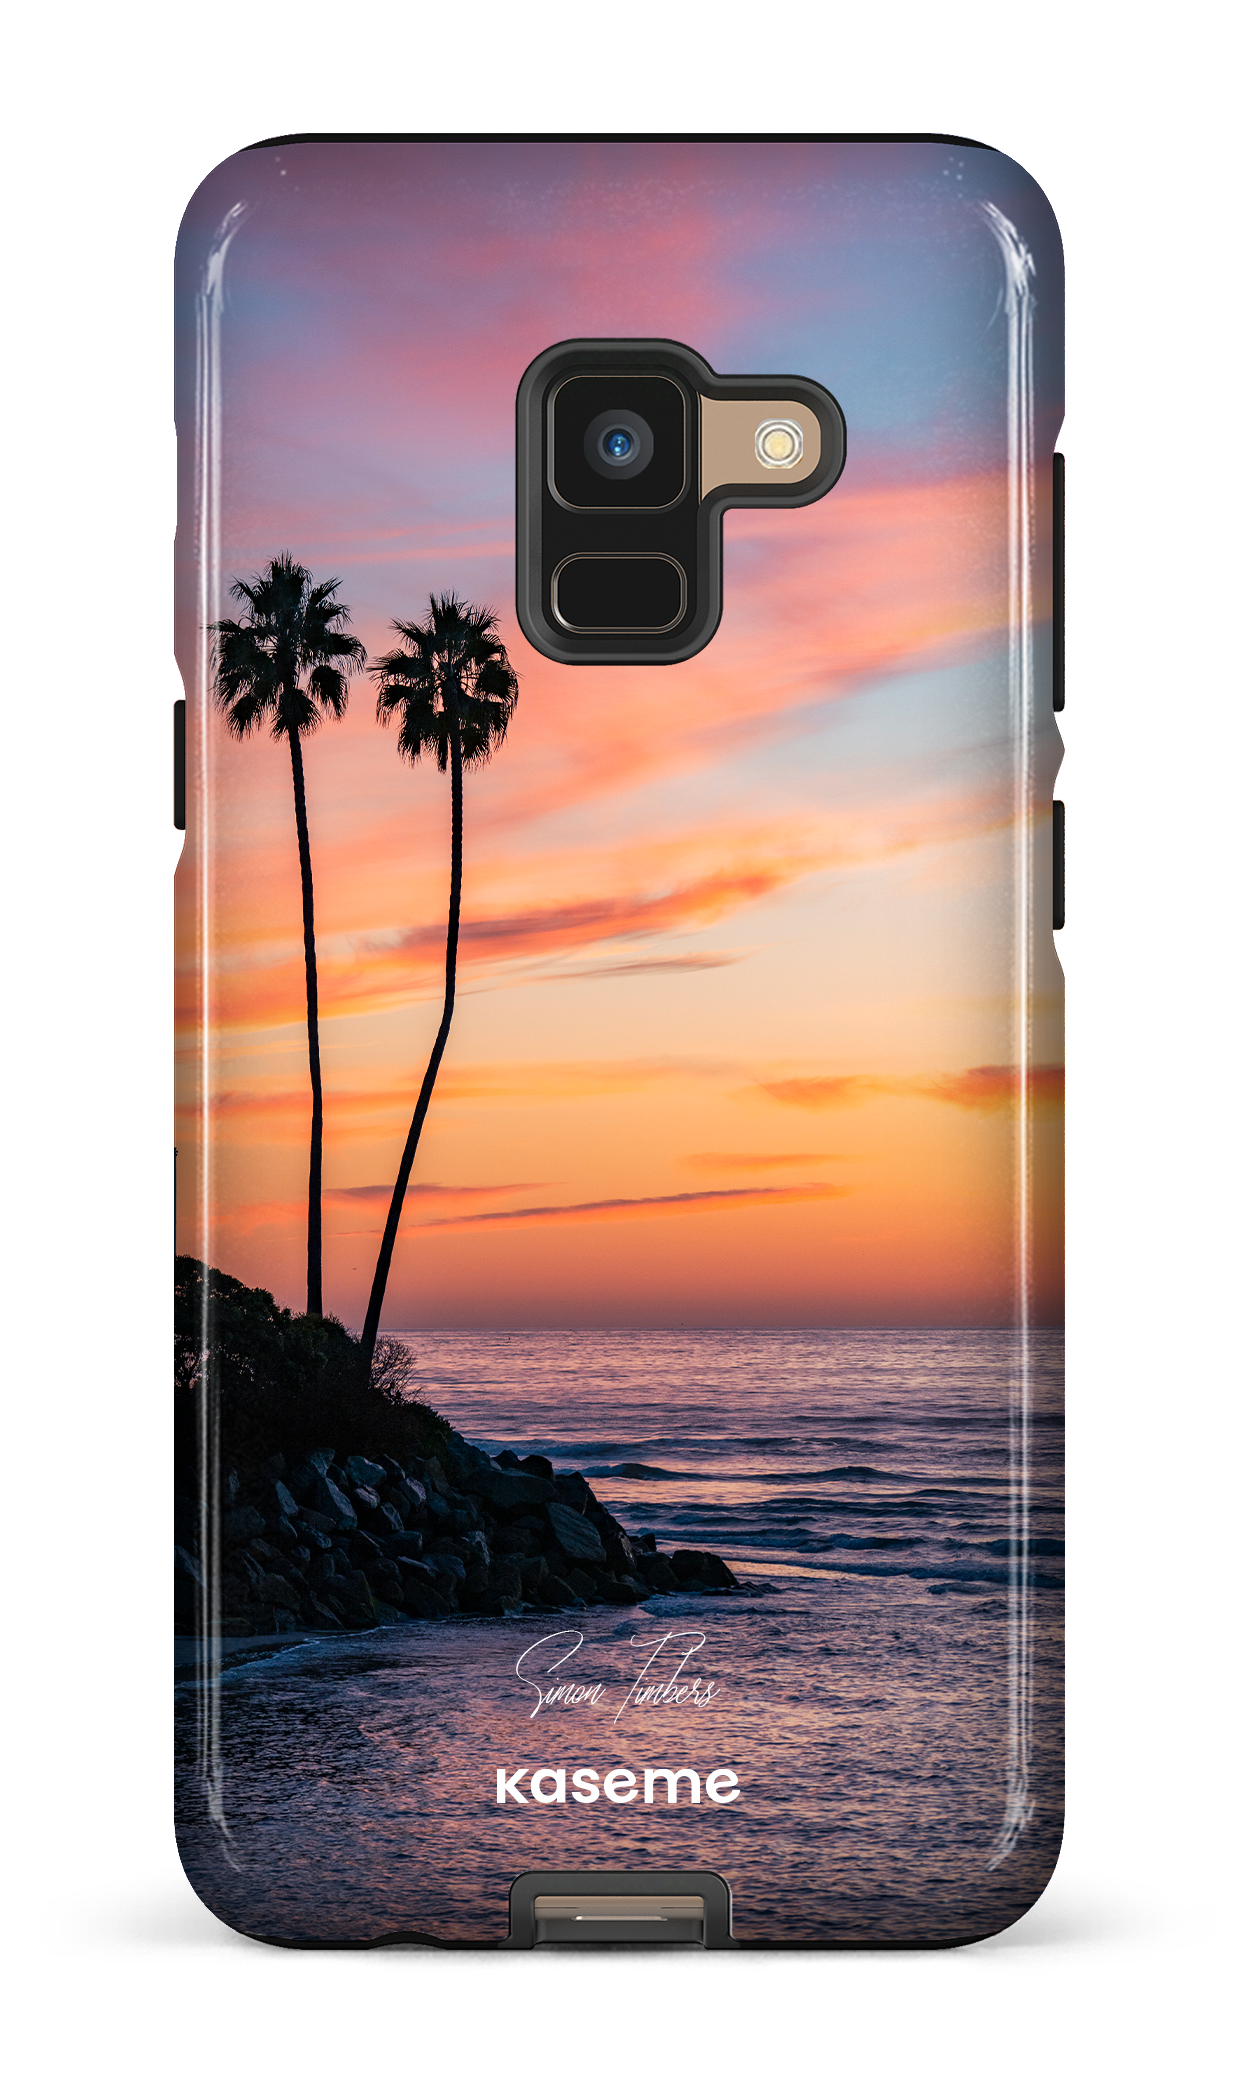 Sunset Palms by Simon Timbers - Galaxy A8